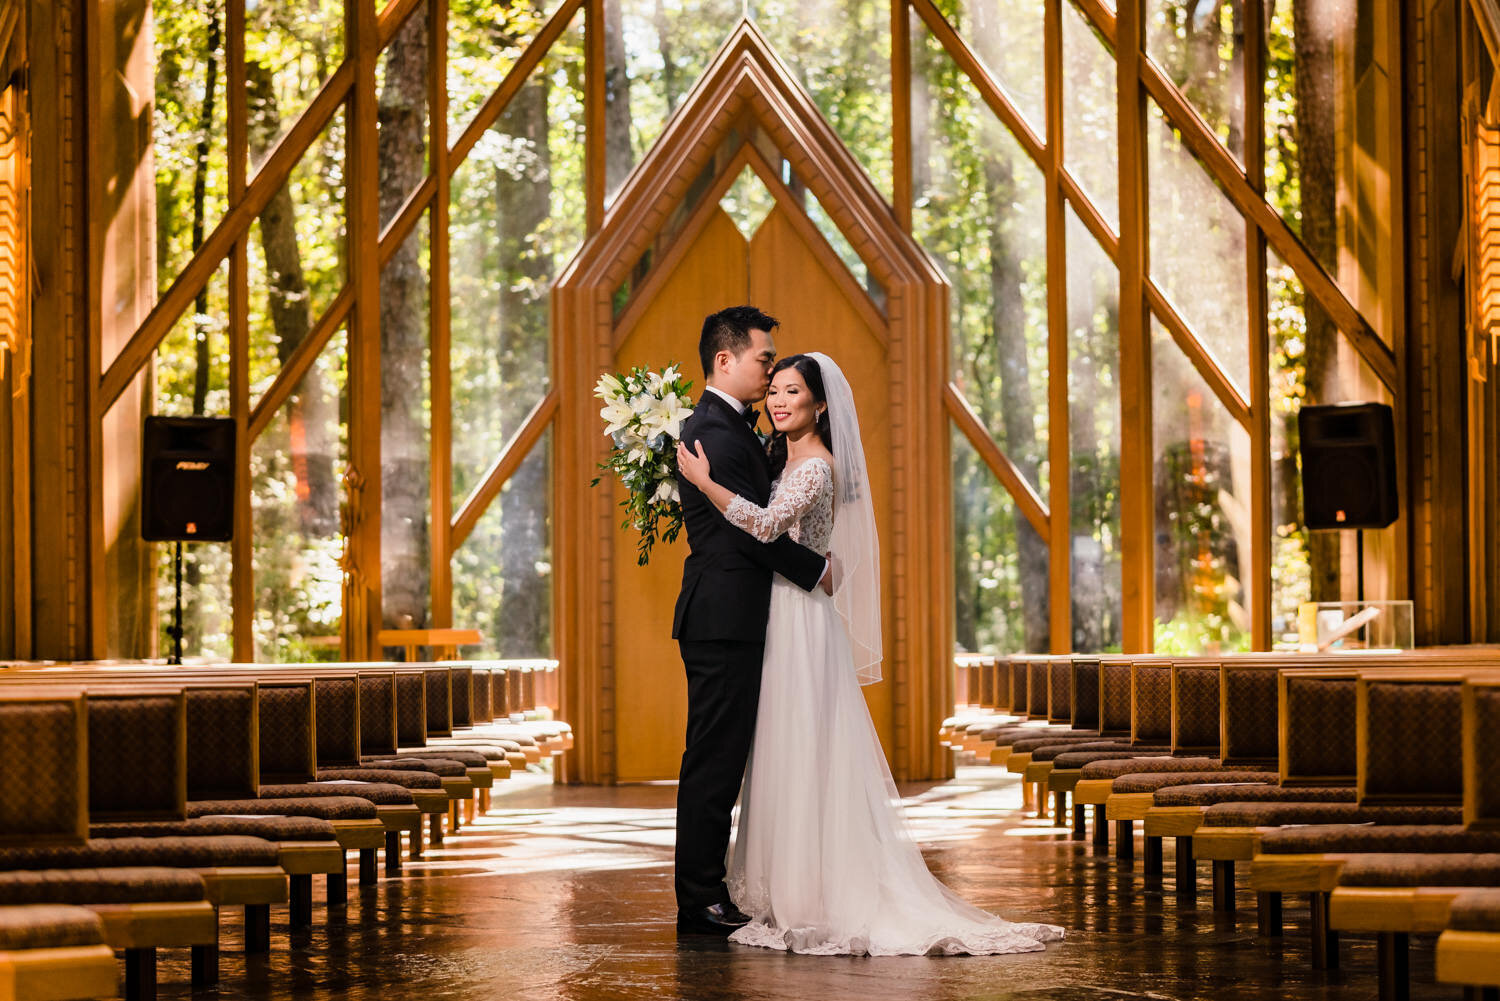  Anthony Chapel wedding by destination wedding photographer, JMGant Photography 